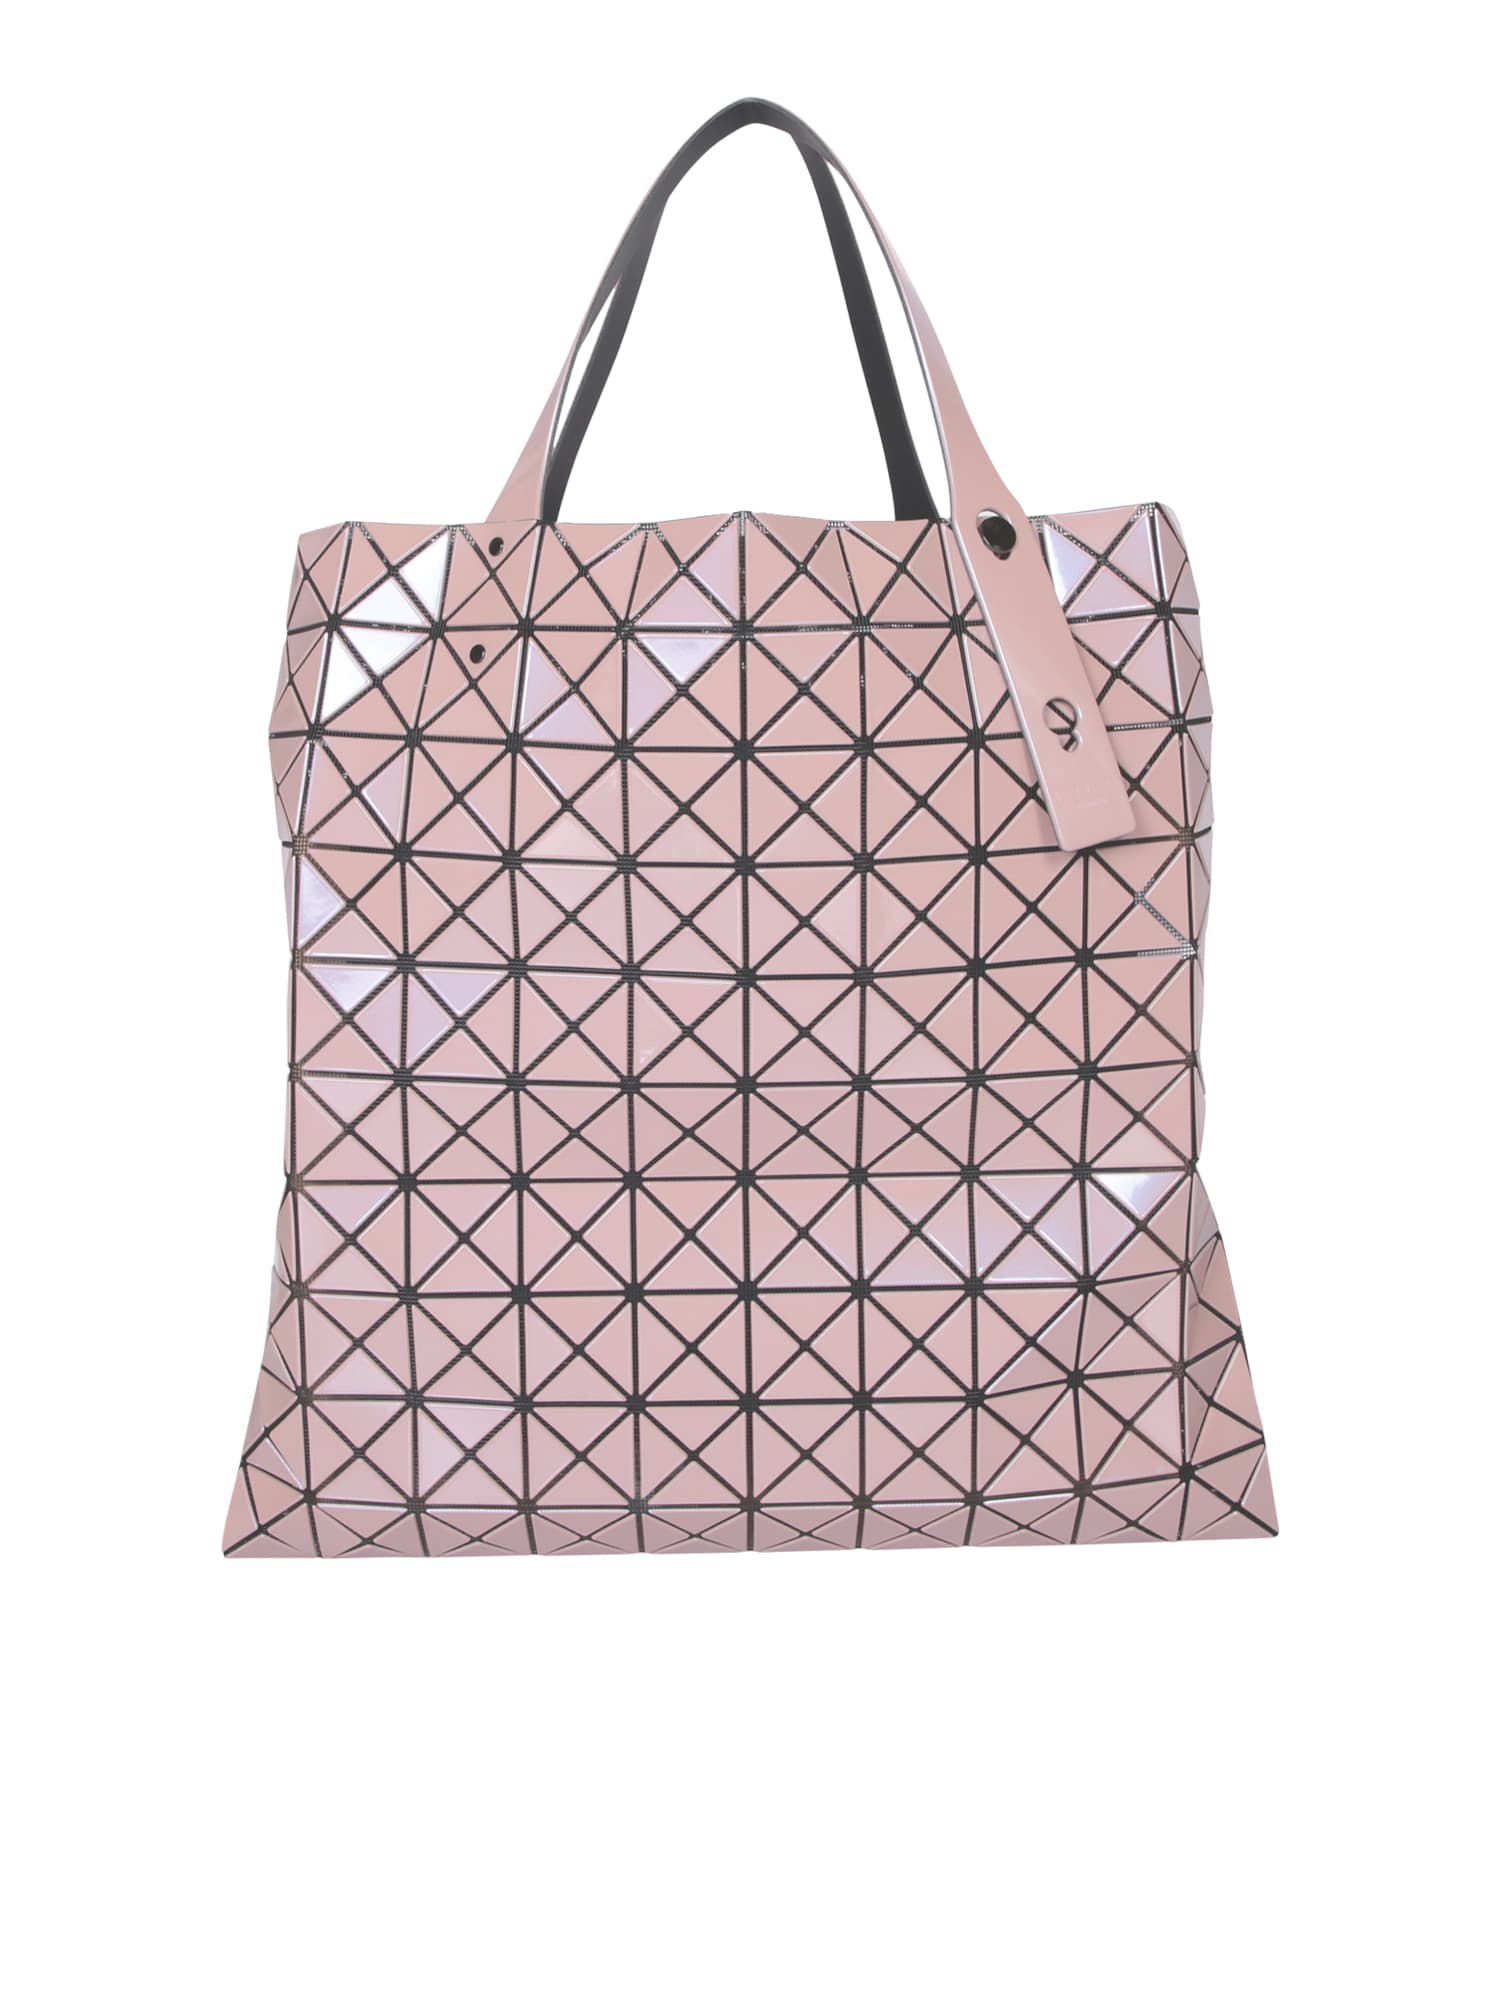 Issey Miyake Prism Metallic Pink Large Bag